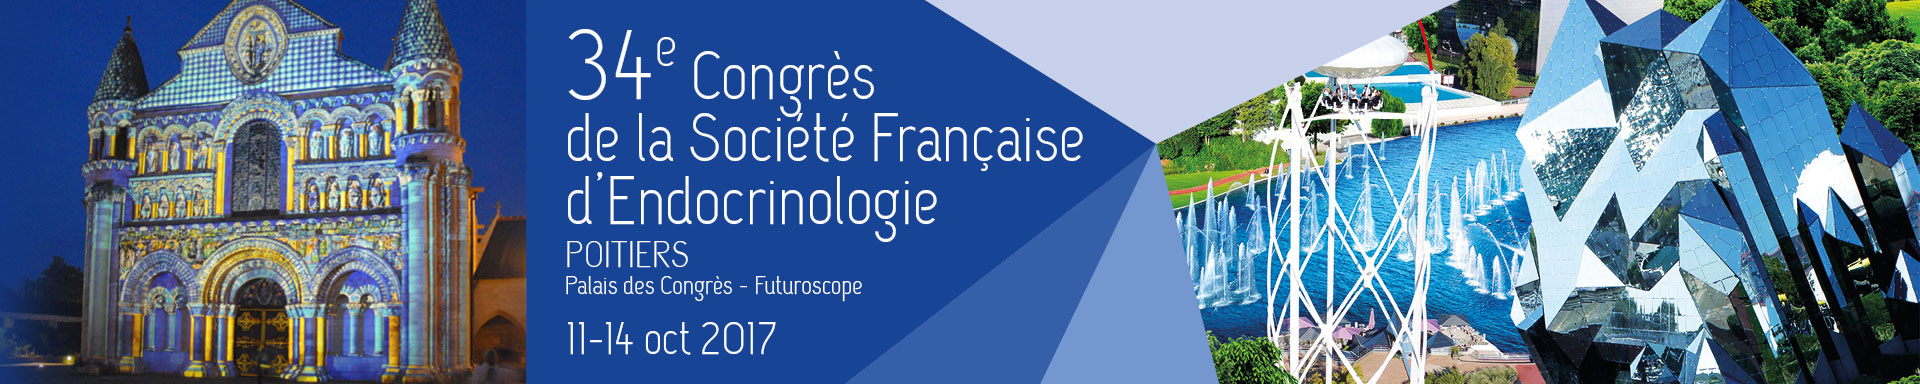 34e Congrès de la Société Française d'Endocrinologie (SFE) 2017